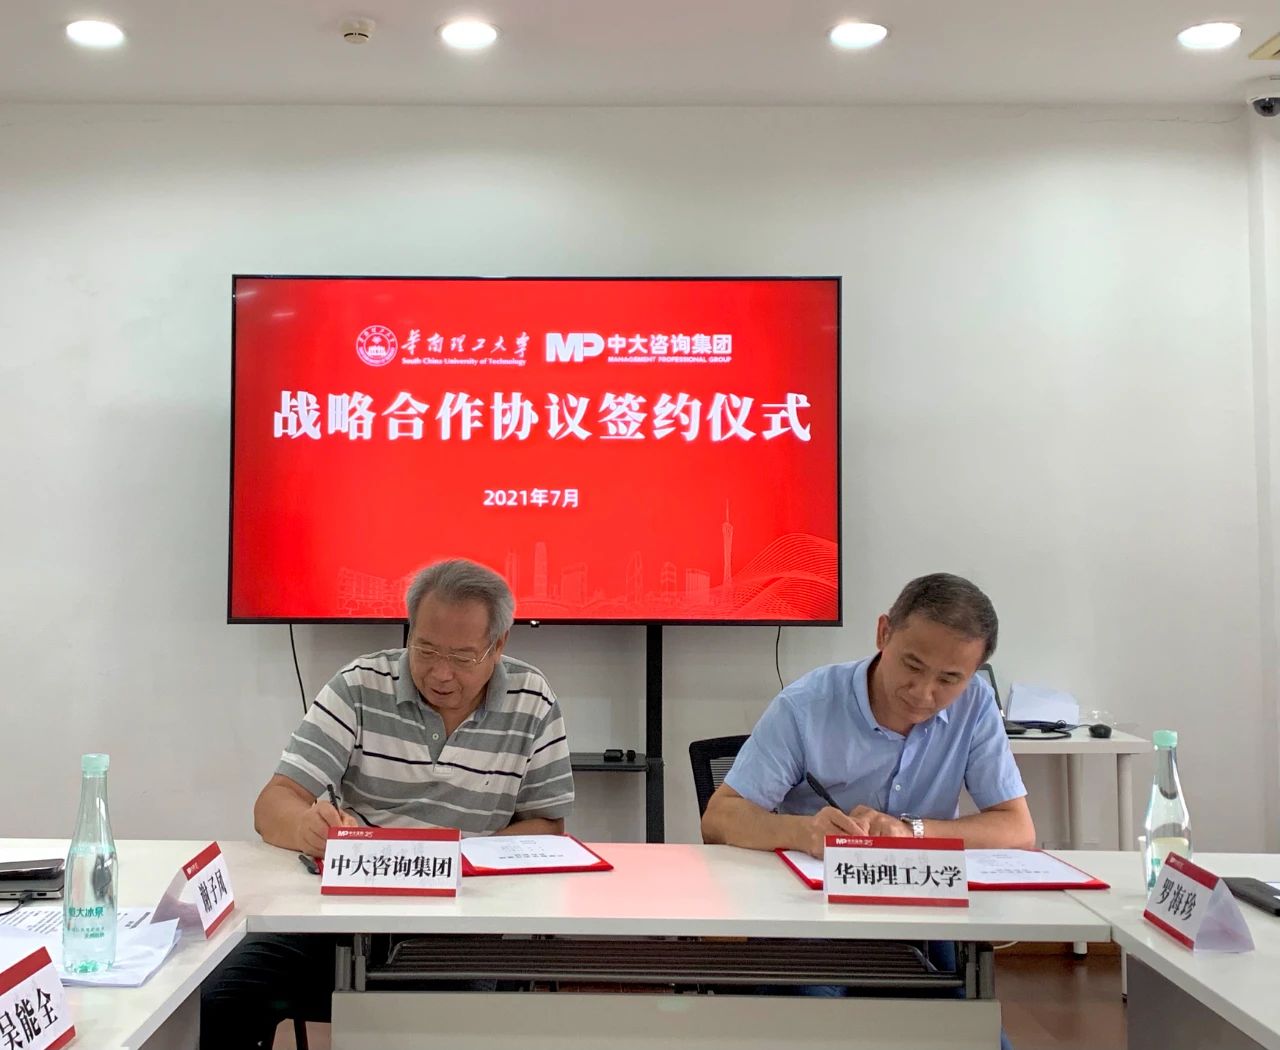 中大咨询与华南理工大学签订战略合作协议